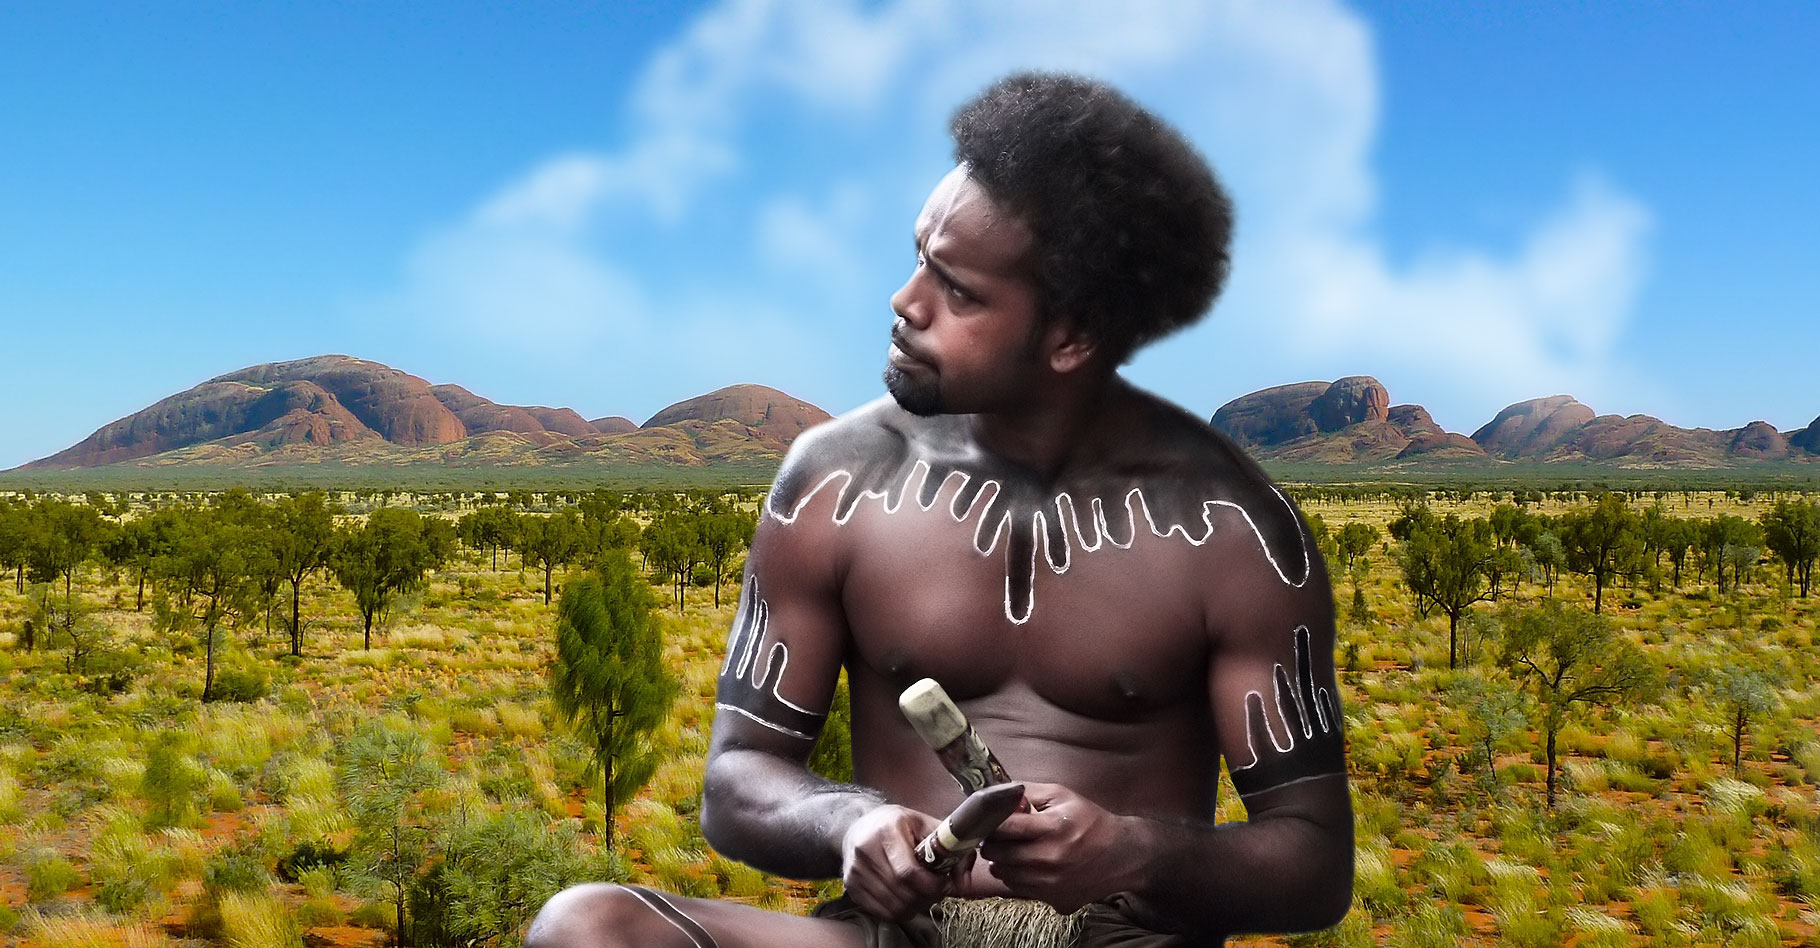 Comment les aborigènes d'Australie évitent-ils la consanguinité ? © Jlogan5,&nbsp;Steve Evans, Pixabay CC by 2.0